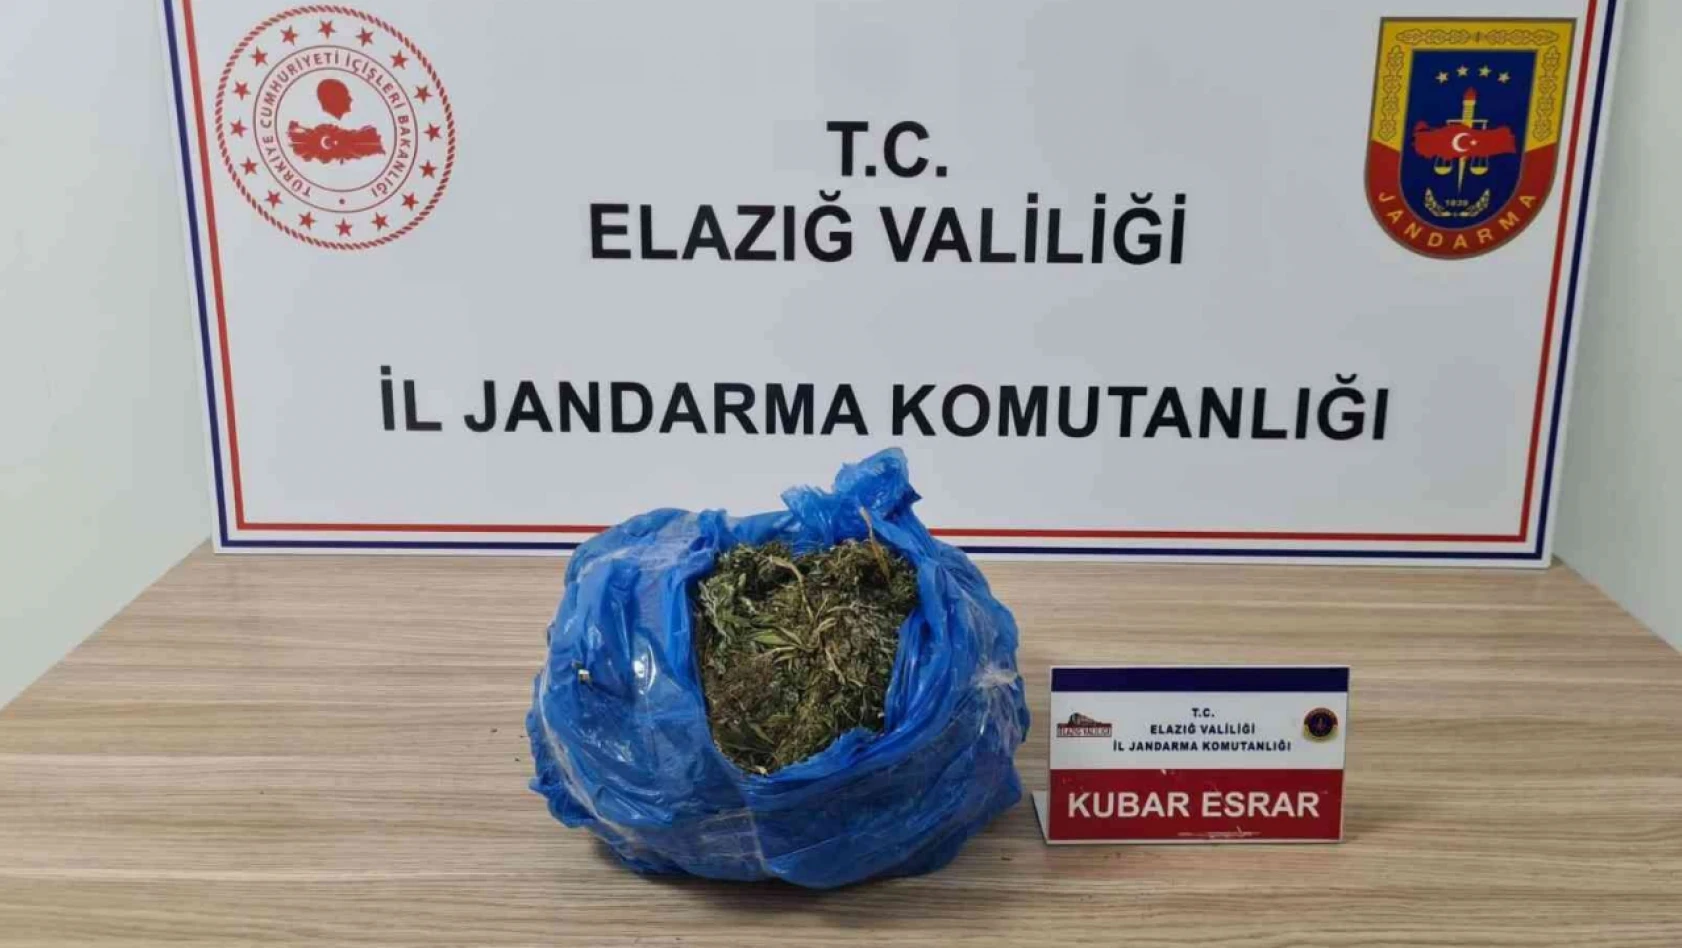 Elazığ'da 2 kilo kubar esrar ele geçirildi: 1 gözaltı